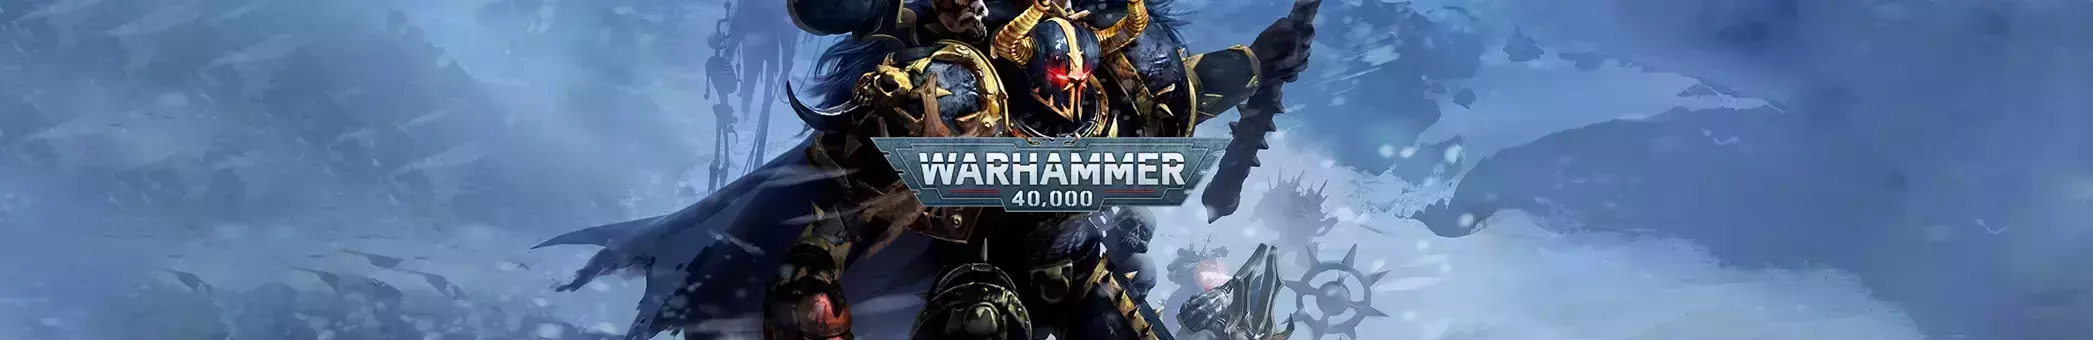 Warhammer Digital Edition